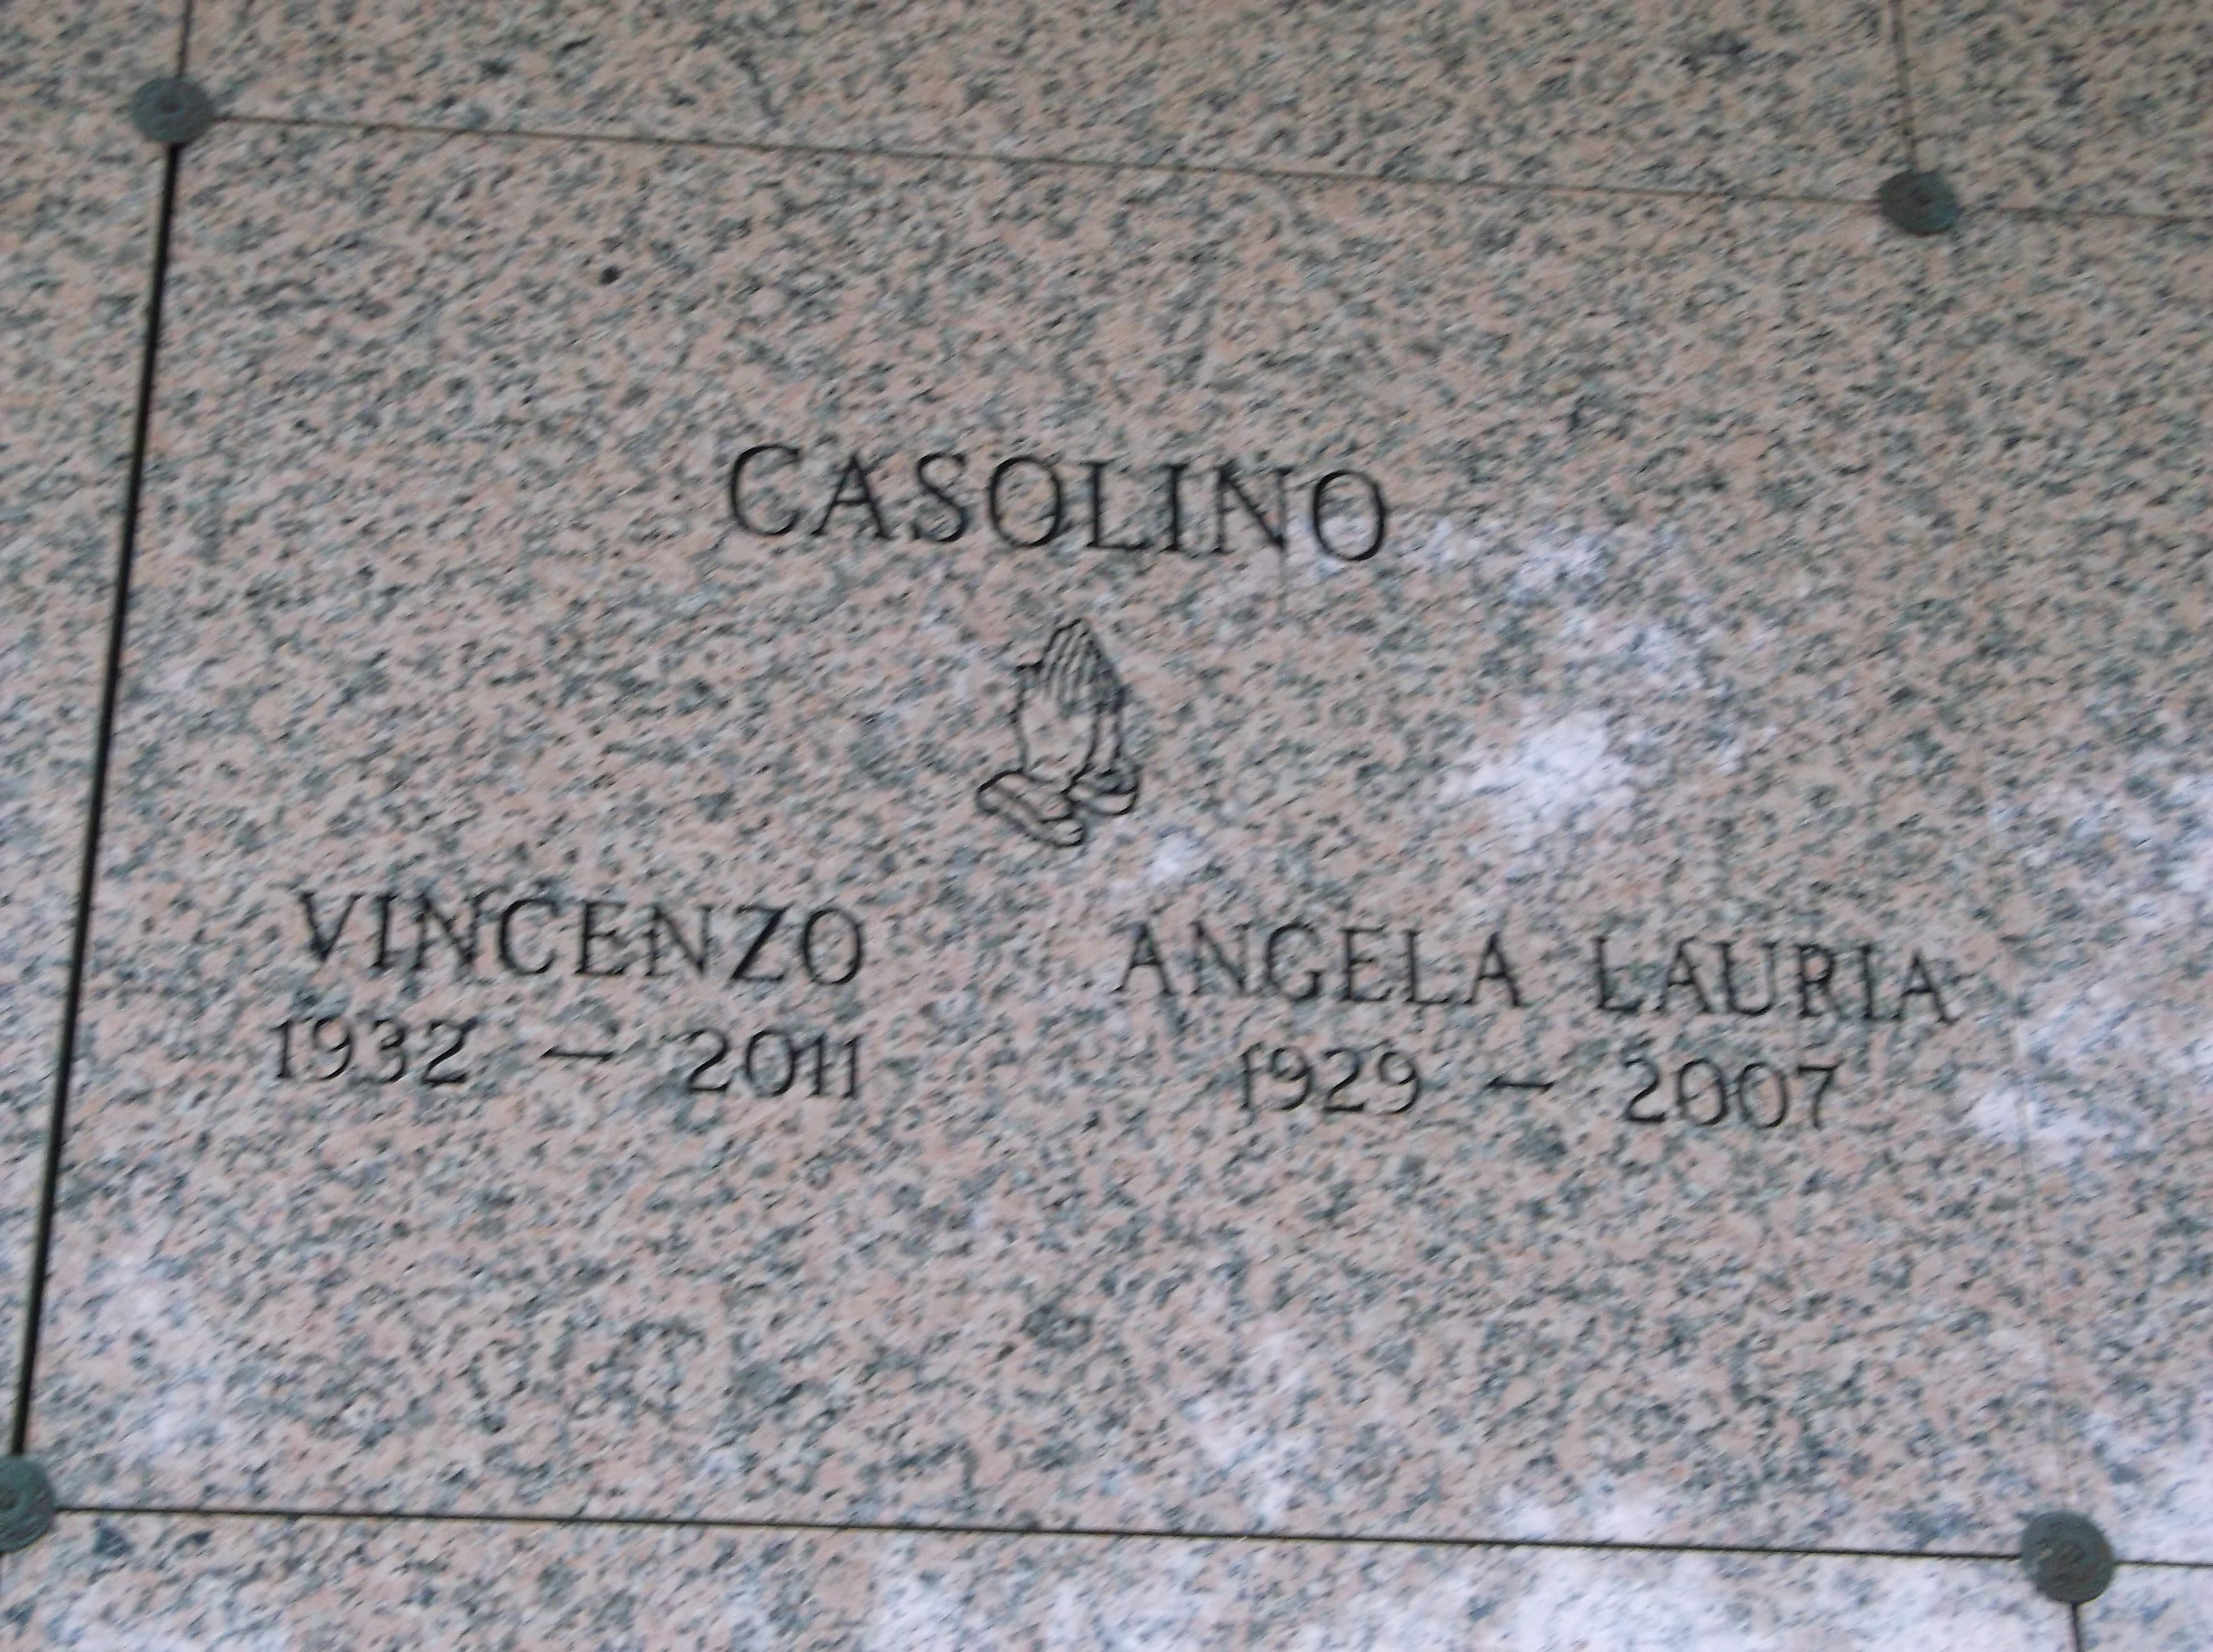 Vincenzo Casolino